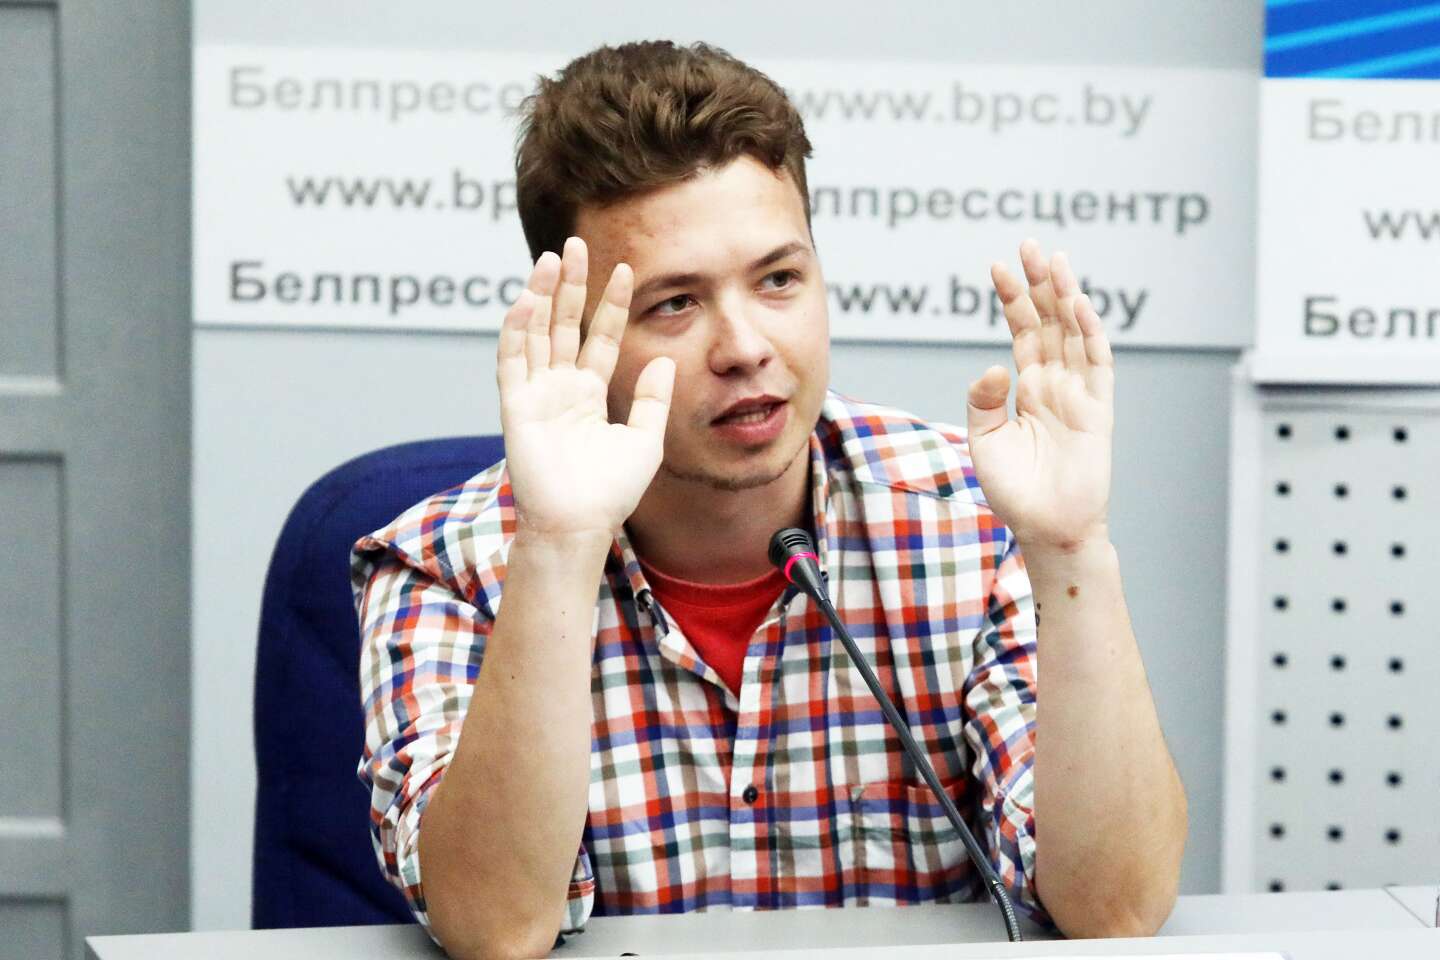 In Bielorussia, Roman Protasevich ha ottenuto l’amnistia dopo aver collaborato con il regime